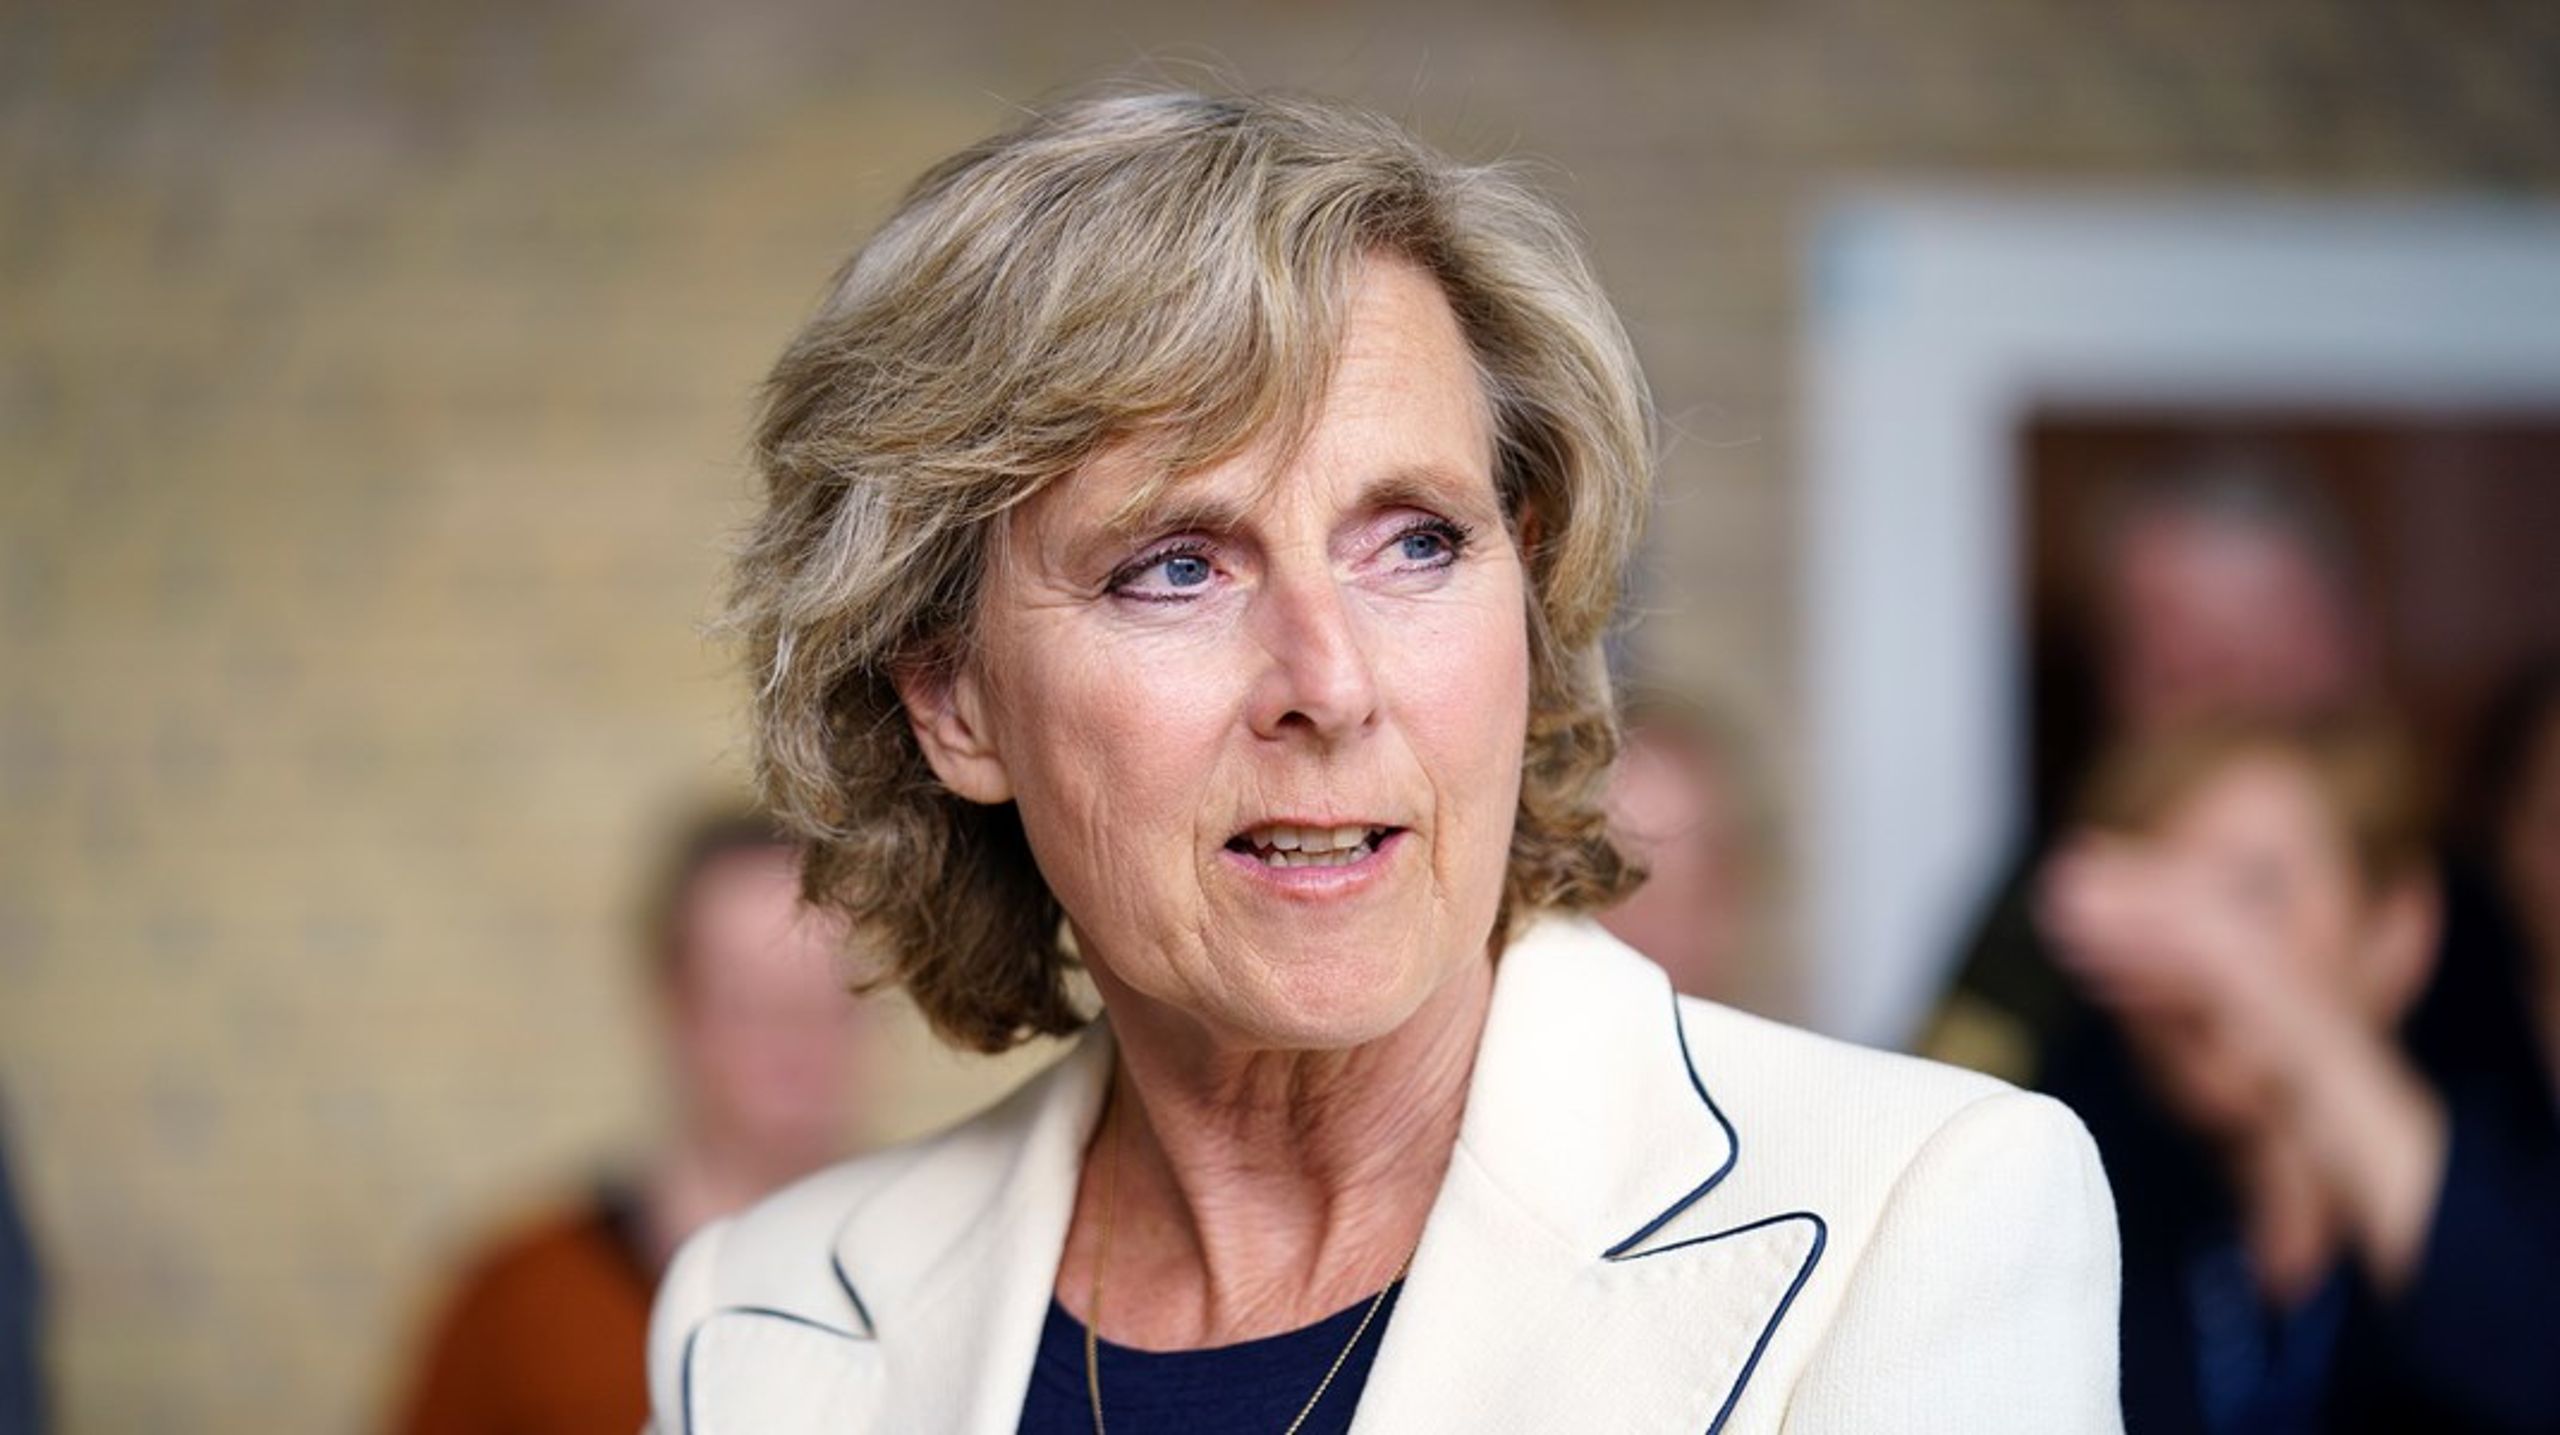 Den tidligere EU-kommissær og konservative politiker Connie Hedegaard bliver en del af&nbsp;Villum Fondens bestyrelse.